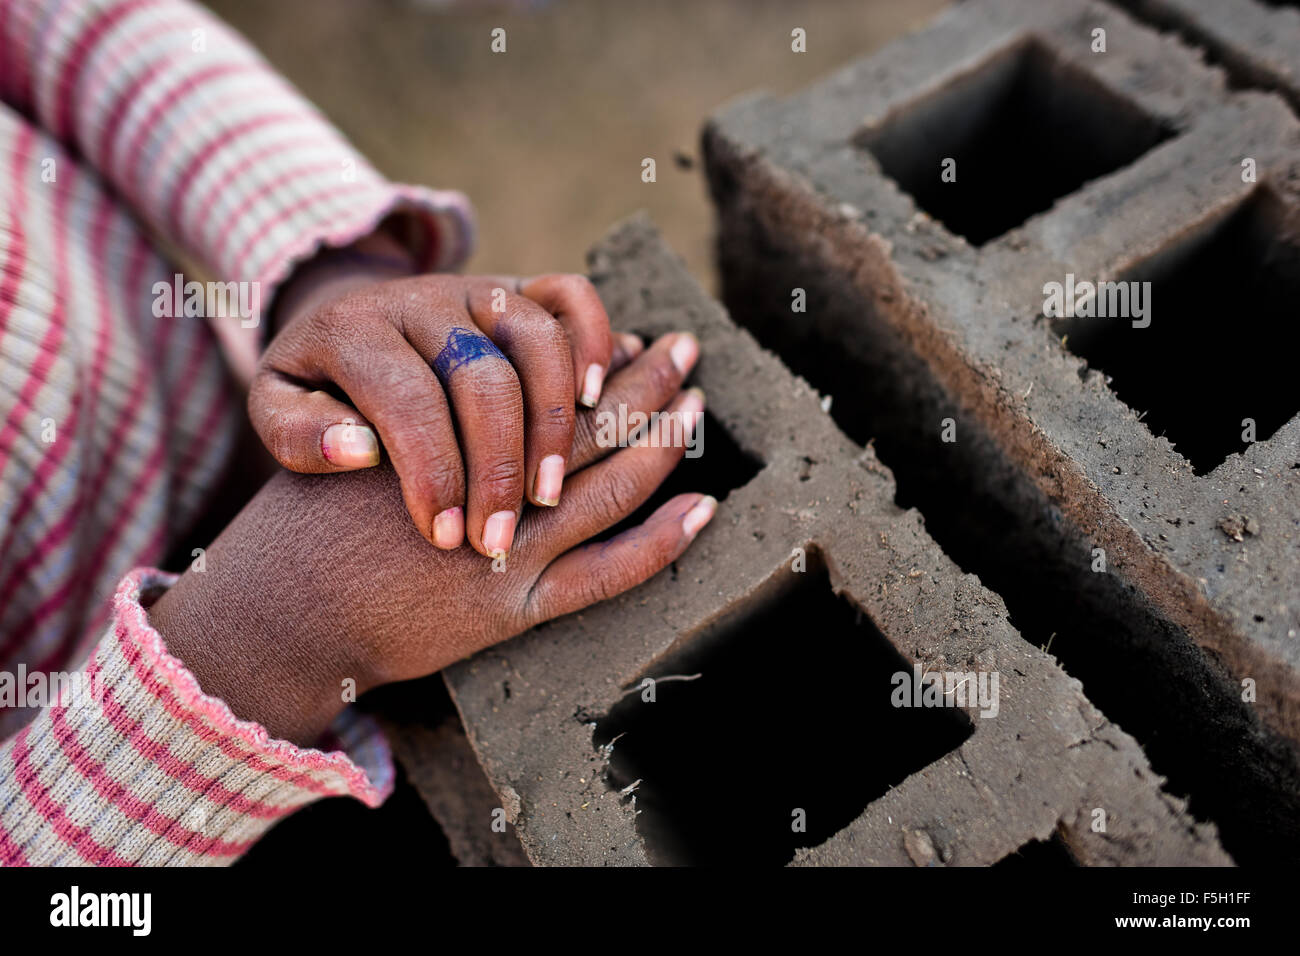 Un anneau créé par un stylo à bille est vu sur un doigt d'une jeune fille travaillant dans une briqueterie dans la périphérie de Puno, Pérou. Banque D'Images